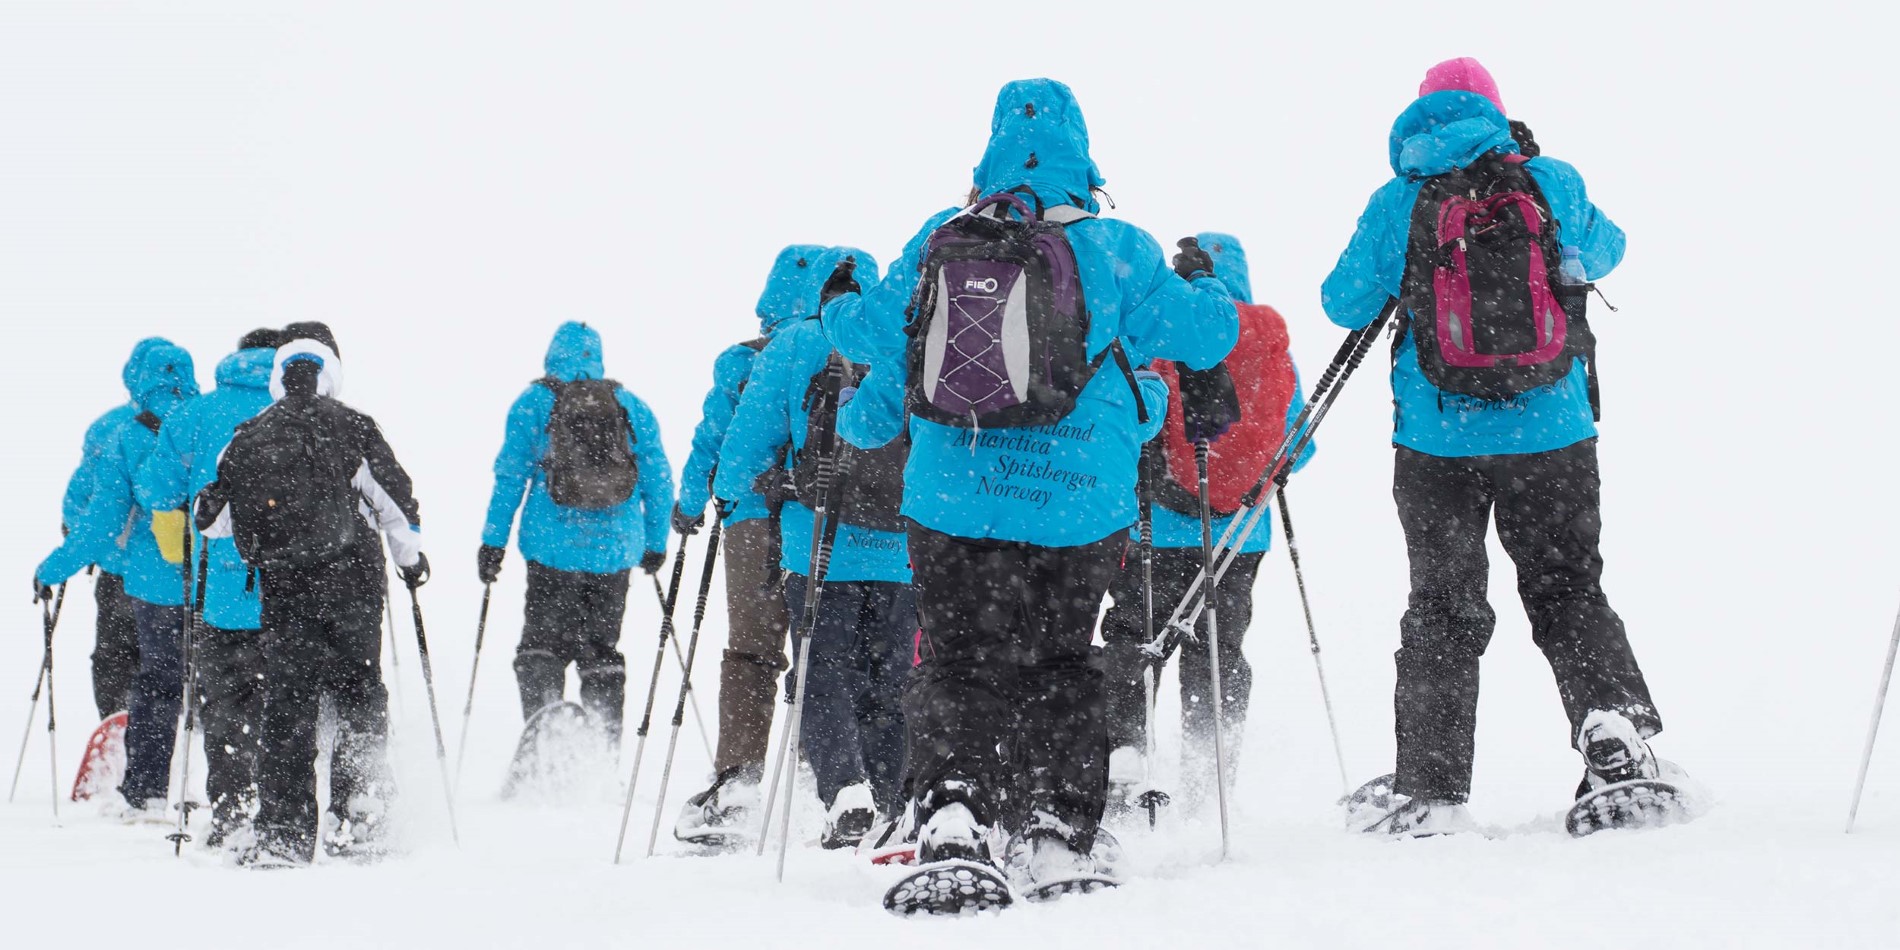 Gruppe af turister sne sneskovandring gennem drift sne